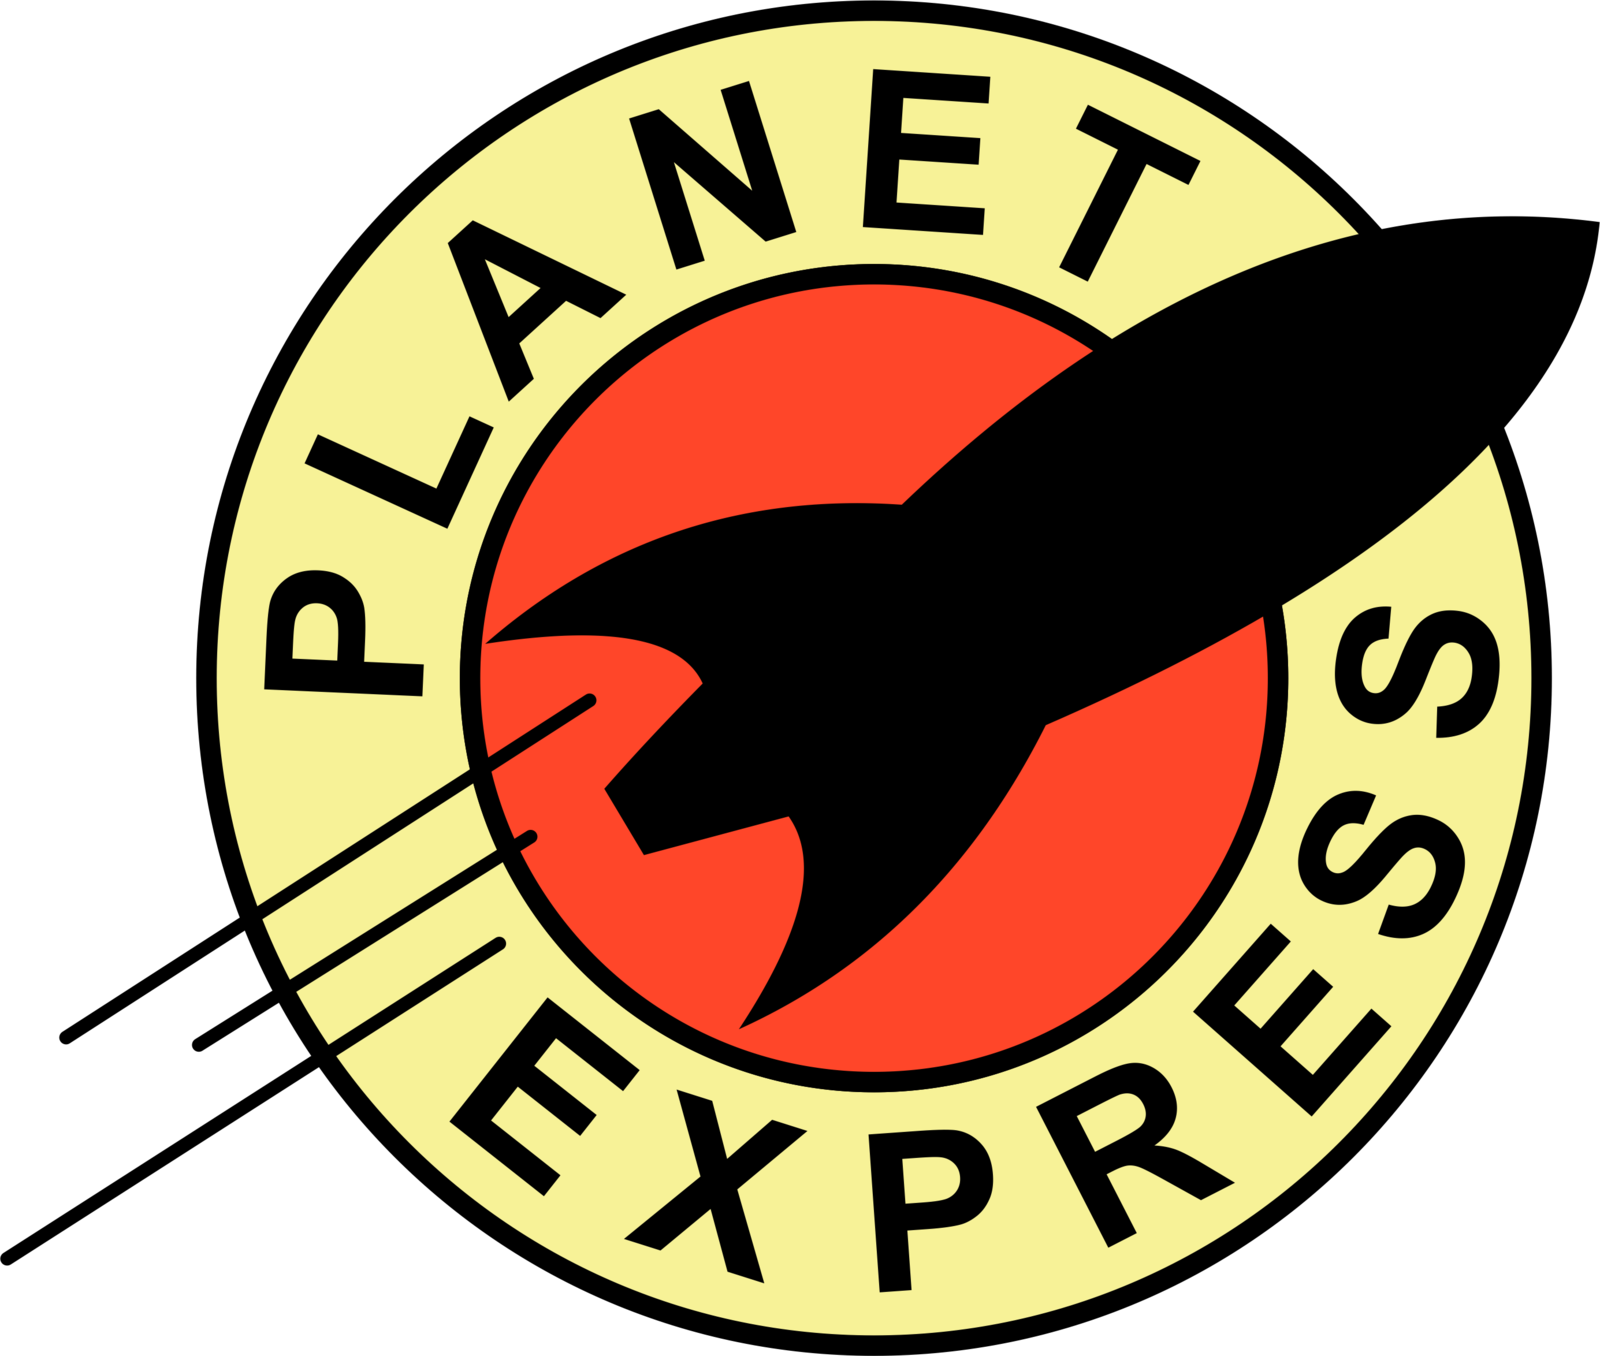 Planet Express Logo by JackSGC on